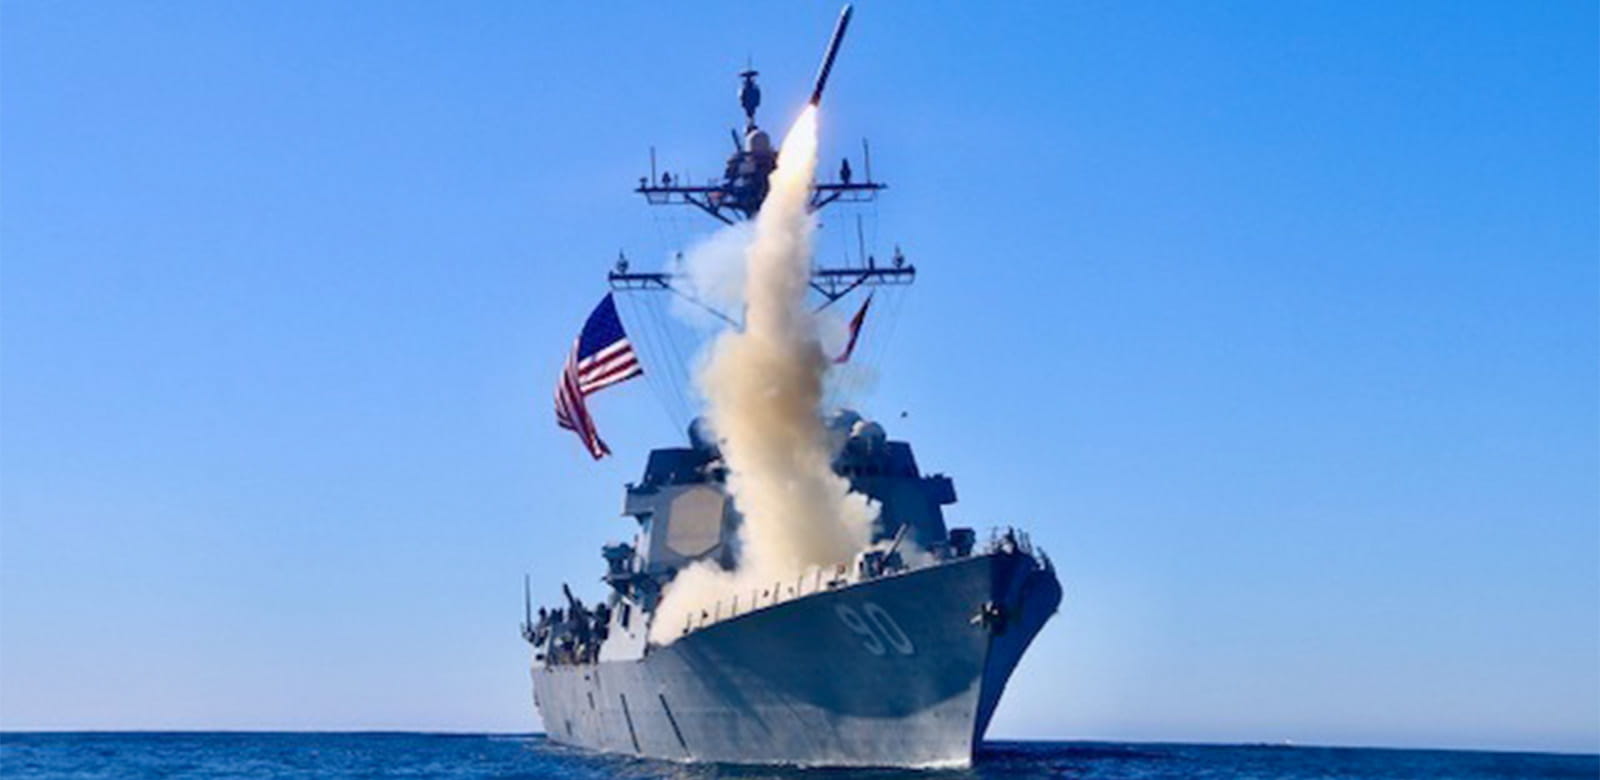 Tomahawk Block V fires from Navy ship